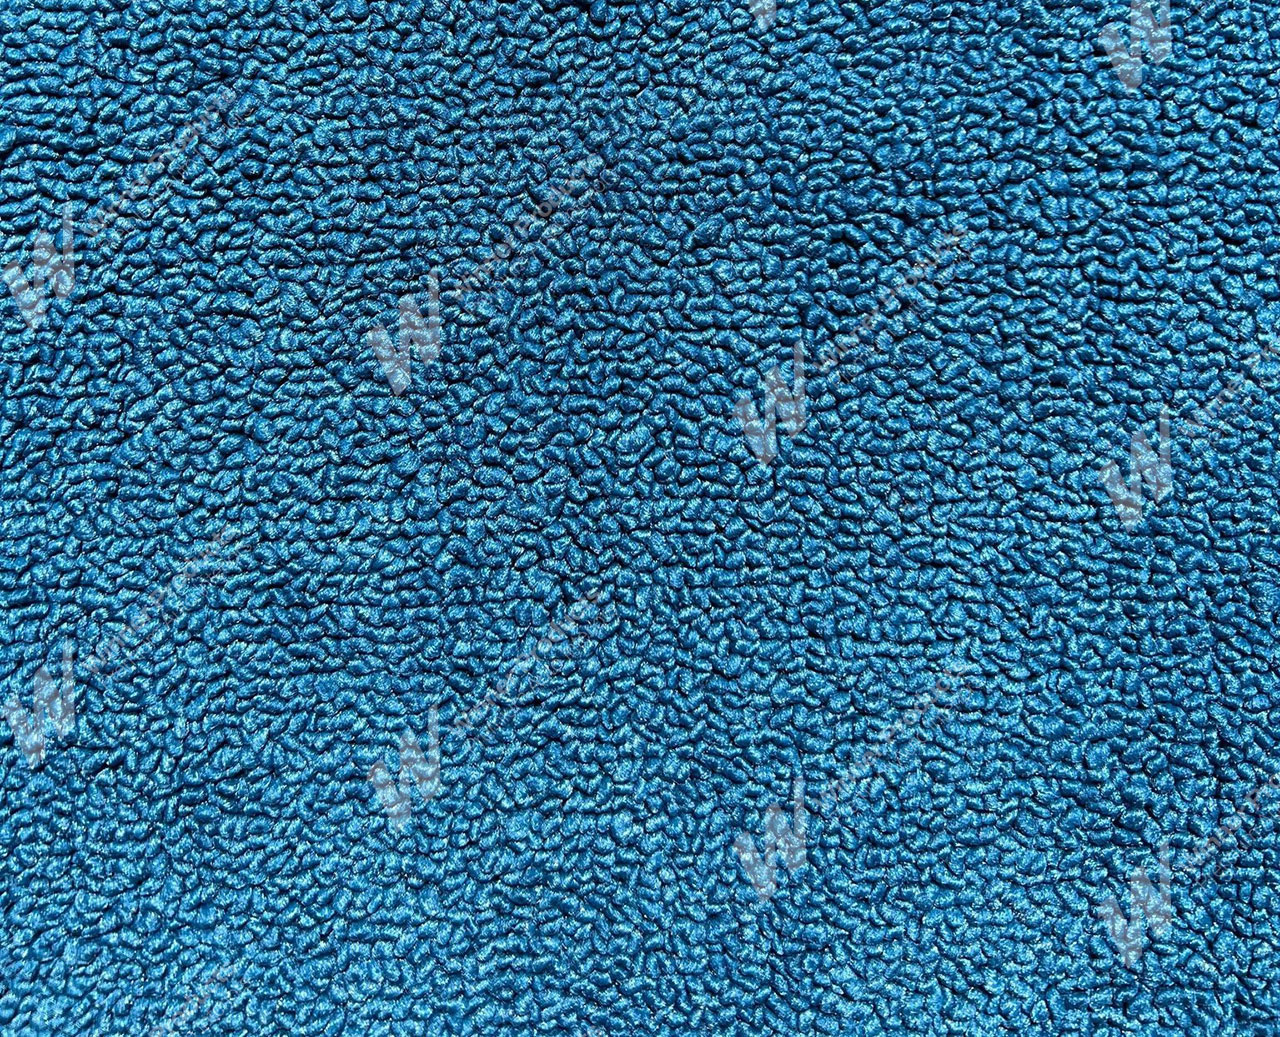 Holden Kingswood HG Kingswood Ute 14E Twilight Blue Carpet (Image 1 of 1)